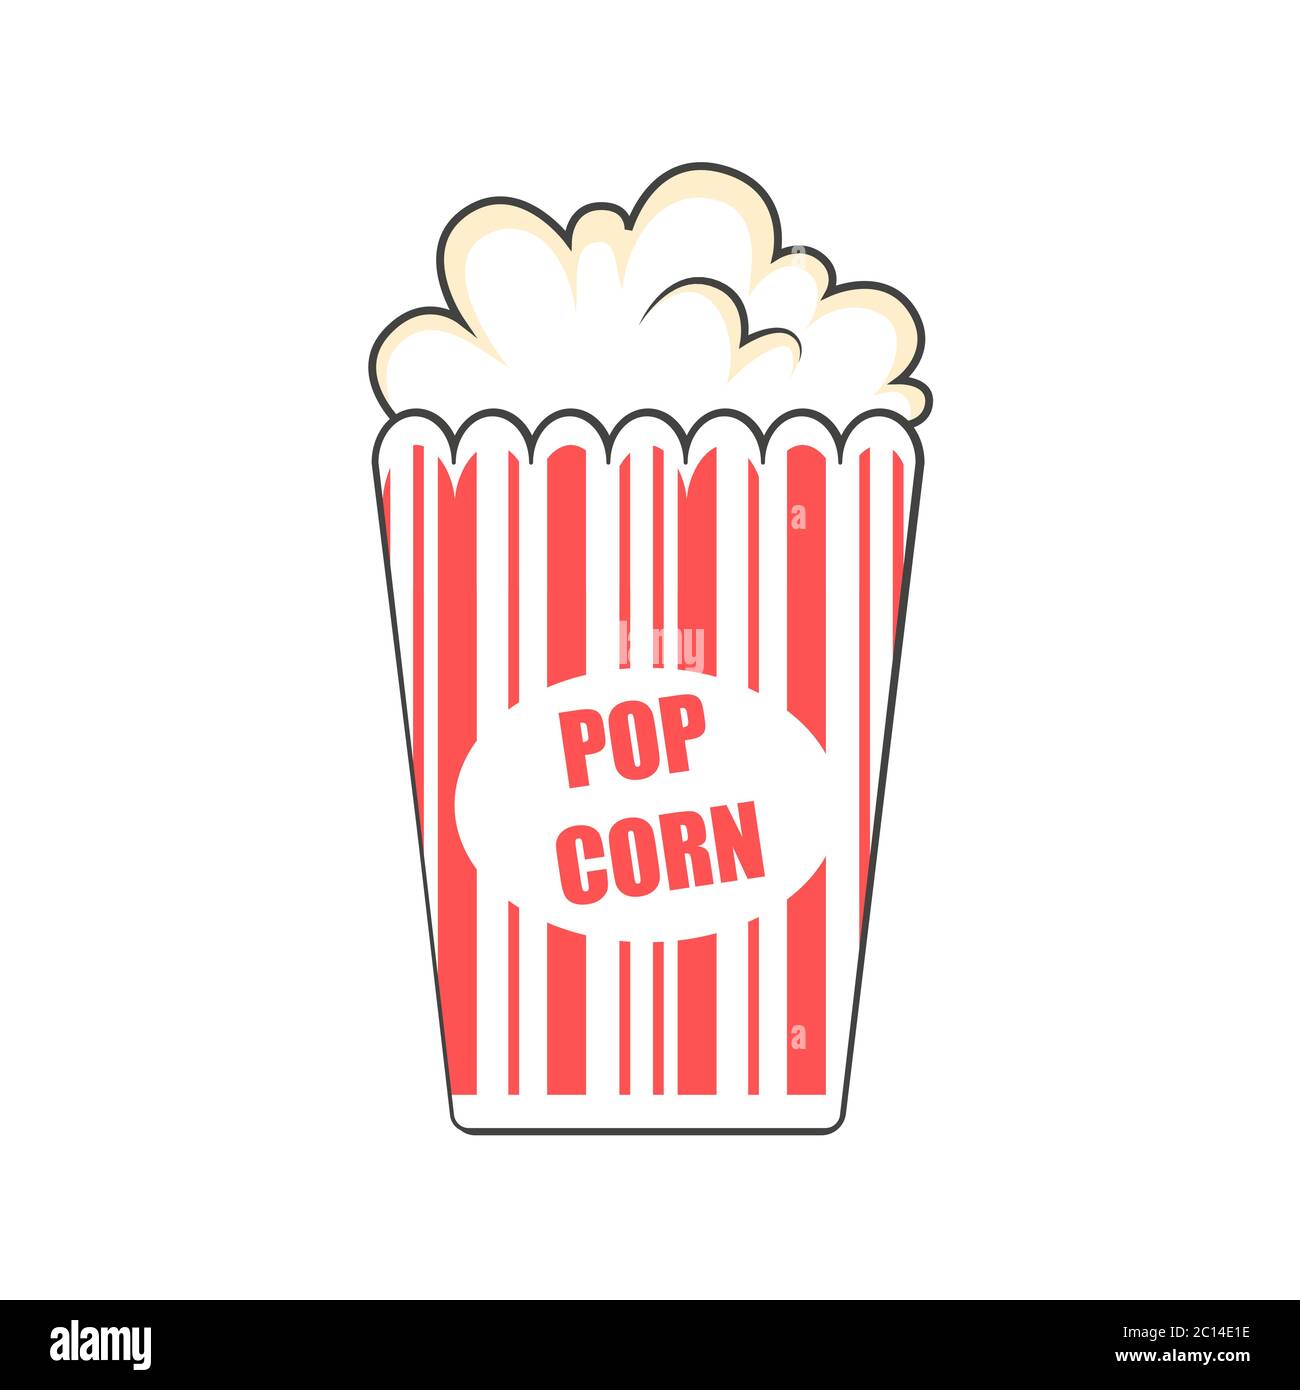 Pop corn cartoon Banque d'images détourées - Alamy